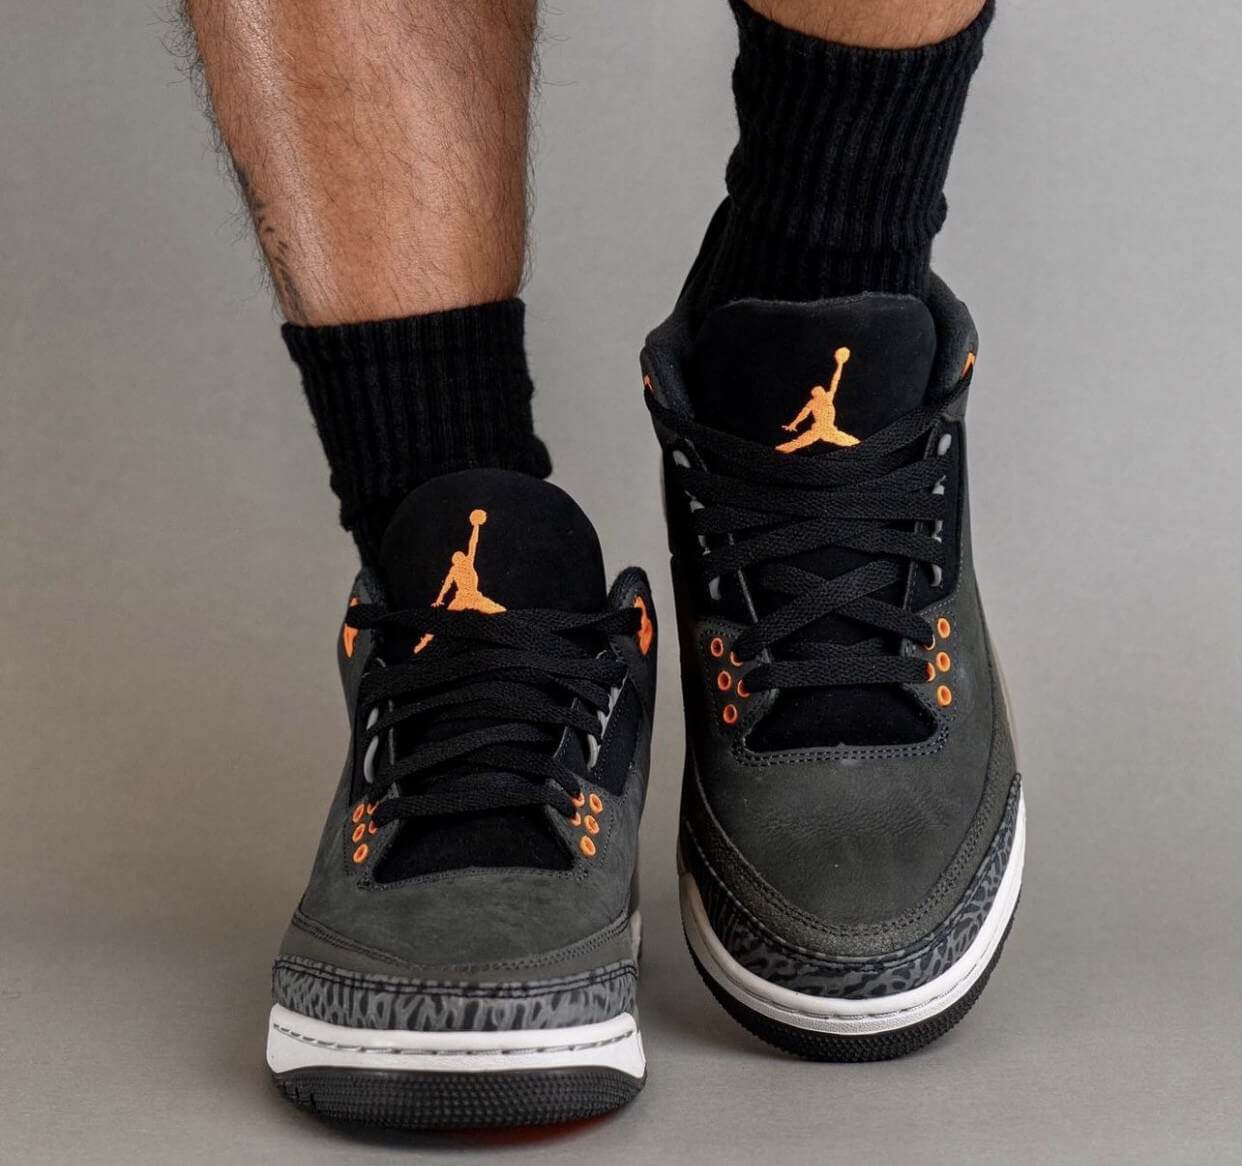 Air Jordan 3 Trainers, Online Air Jordan Sneakers